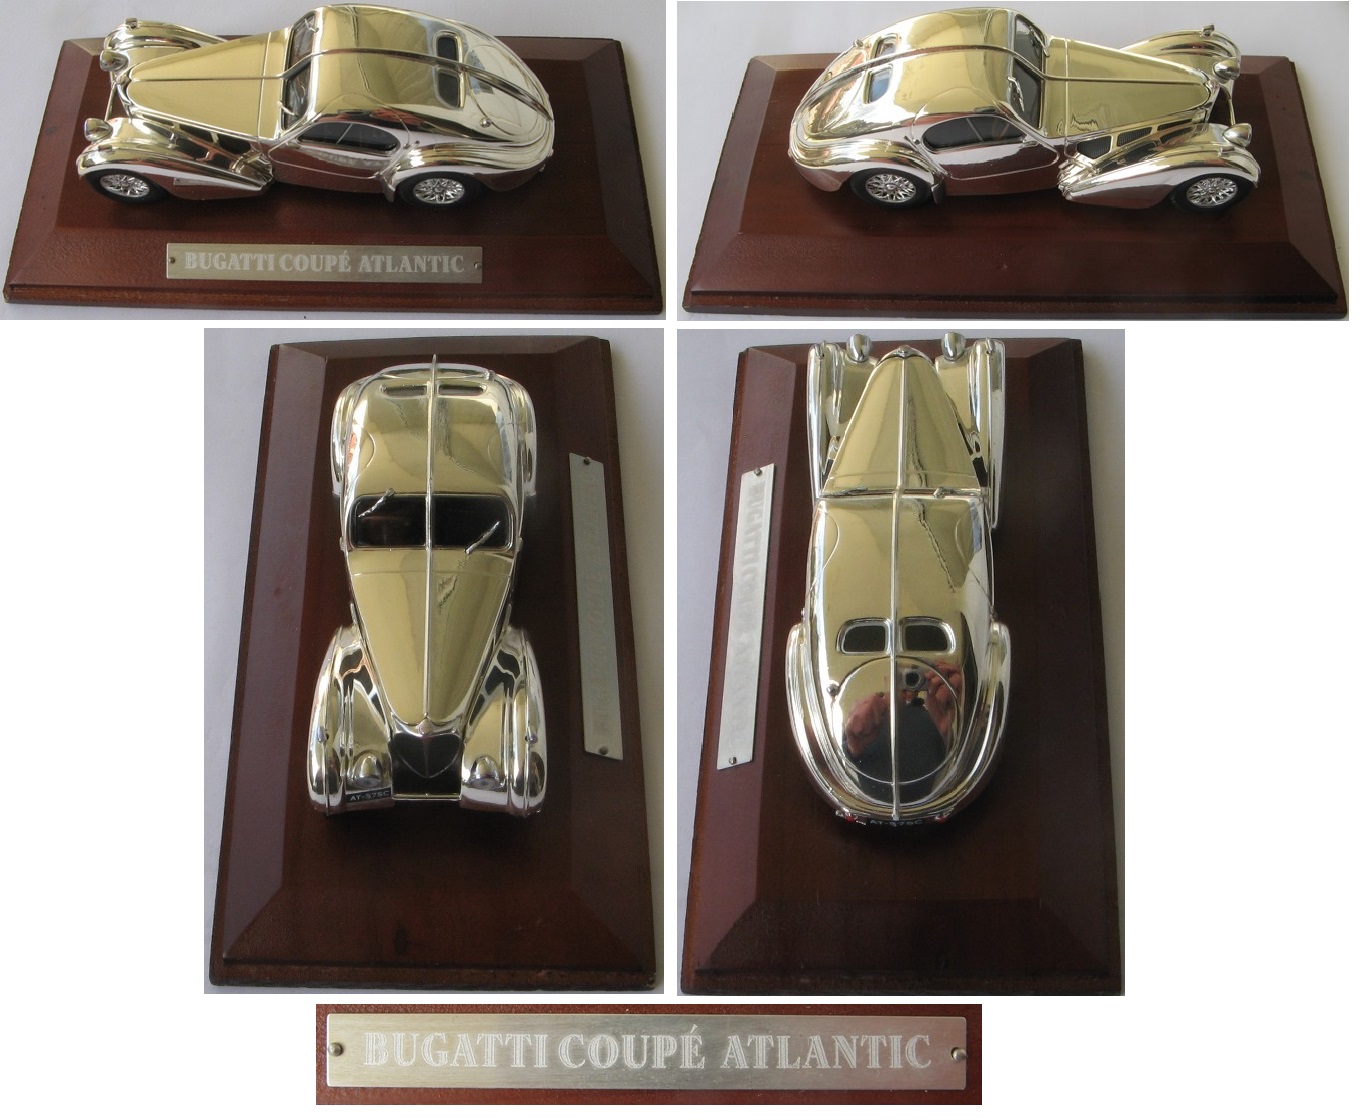  Bugatti Coupe' Atlantic-Modellauto-Silver Cars Collection 1/43-Originalverpackung   